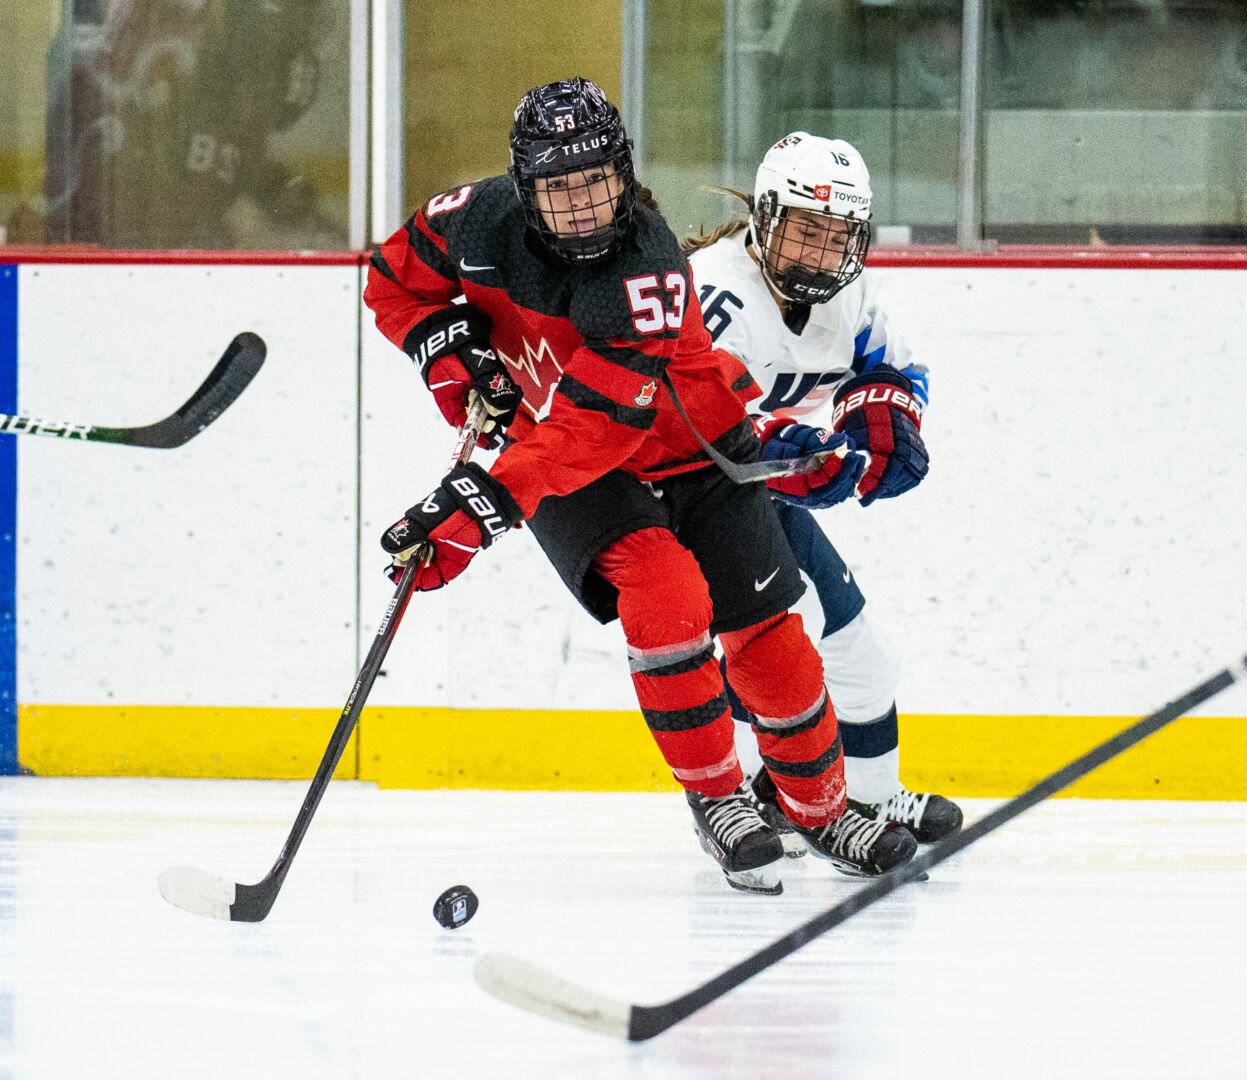 Éloïse Caron vivra sa première expérience internationale en enfilant l’uniforme d’Équipe Canada lors du Championnat du monde de hockey féminin des moins de 18 ans, au début janvier. Photo Hockey Canada